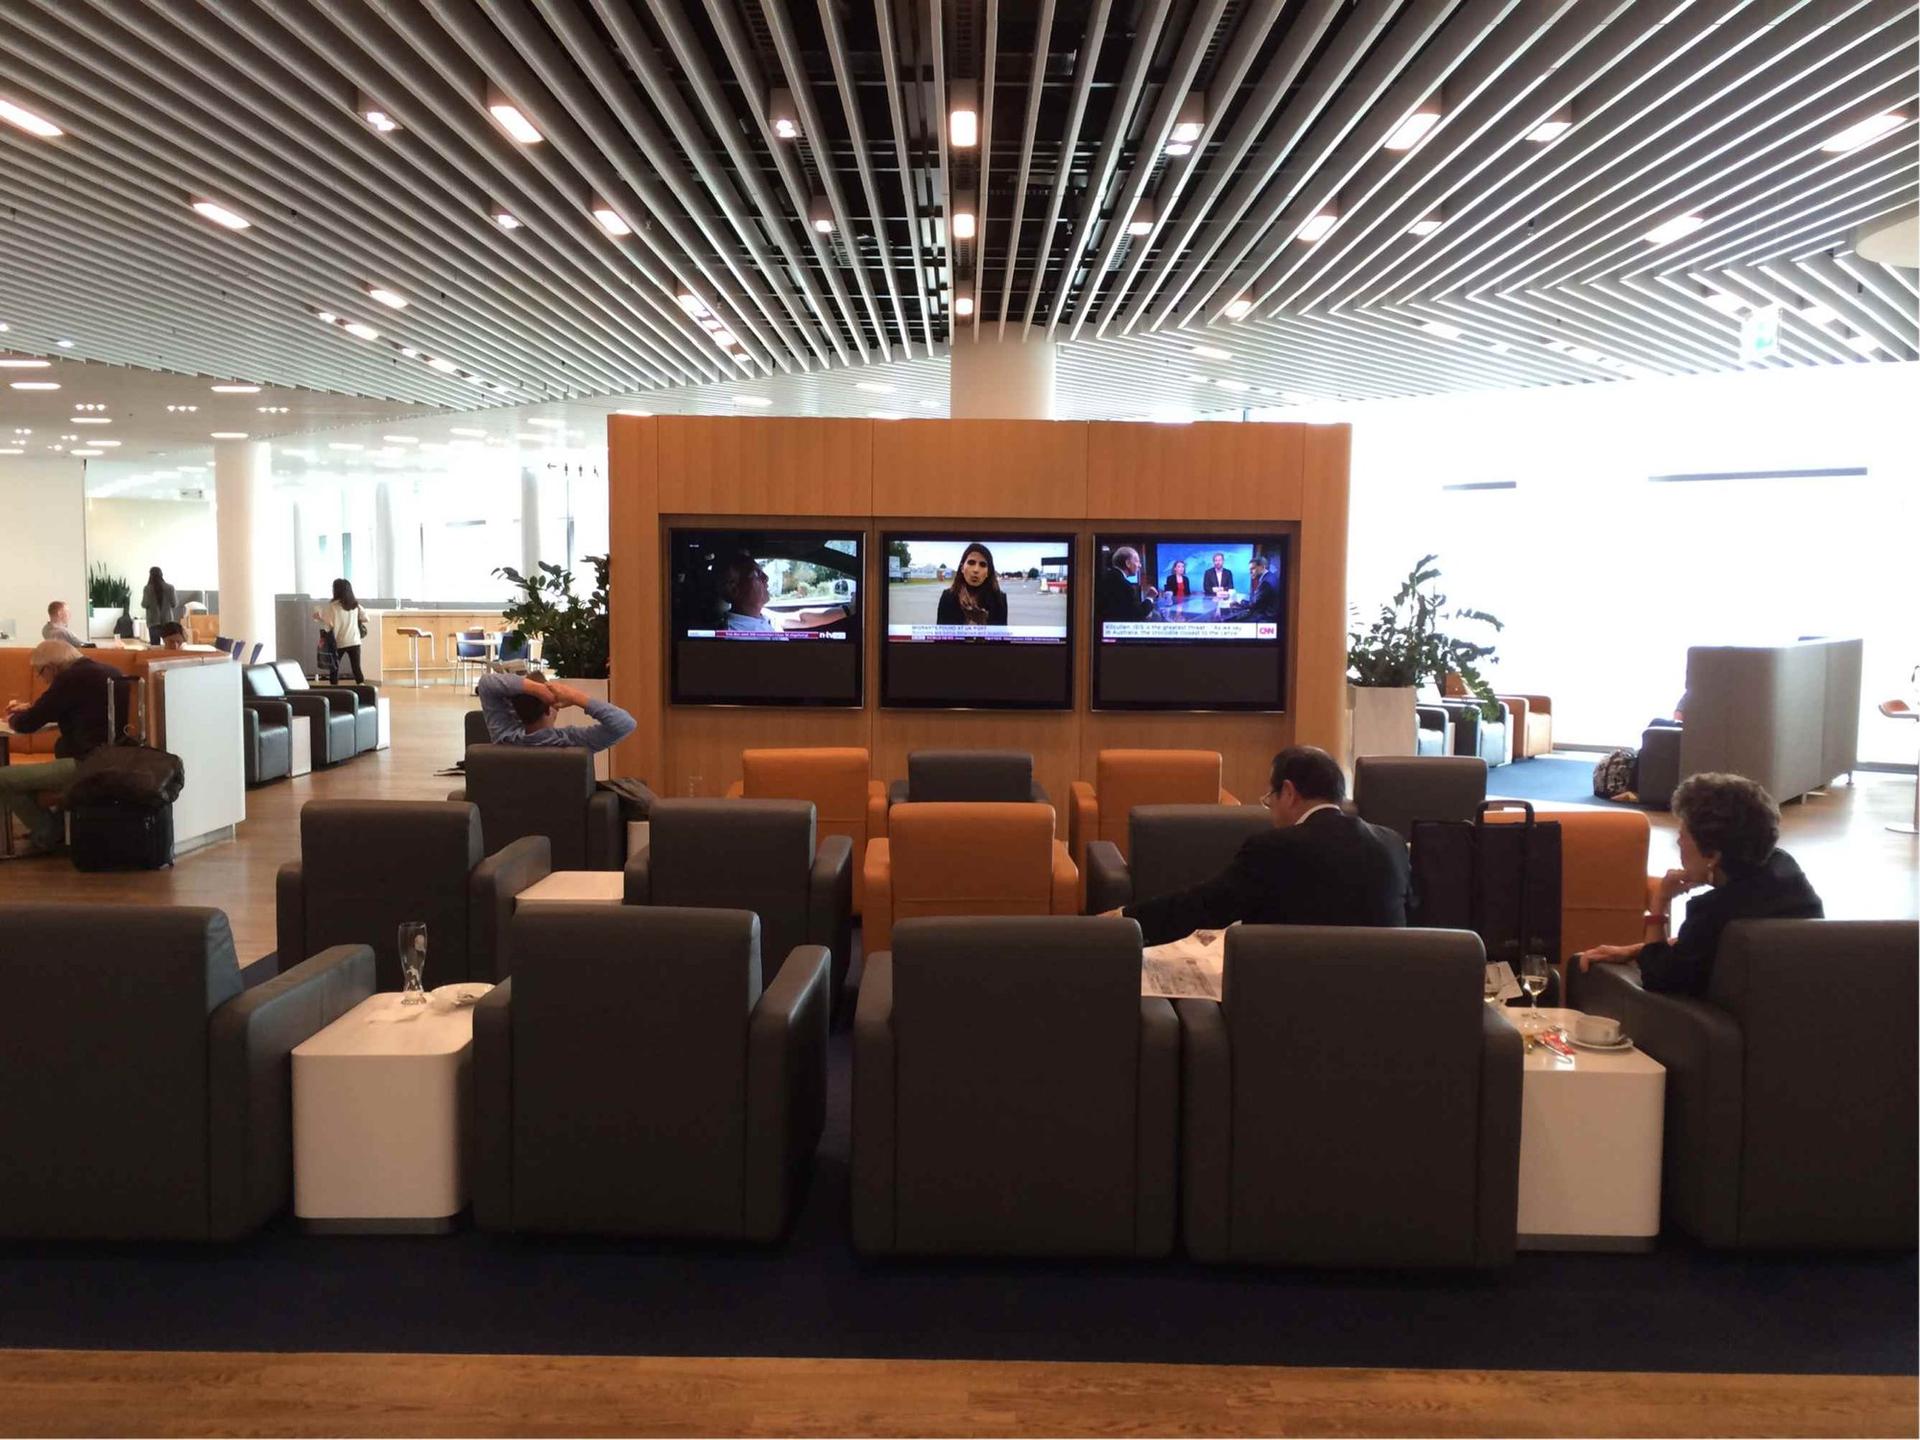 Lufthansa Business Lounge (Non-Schengen) image 5 of 14